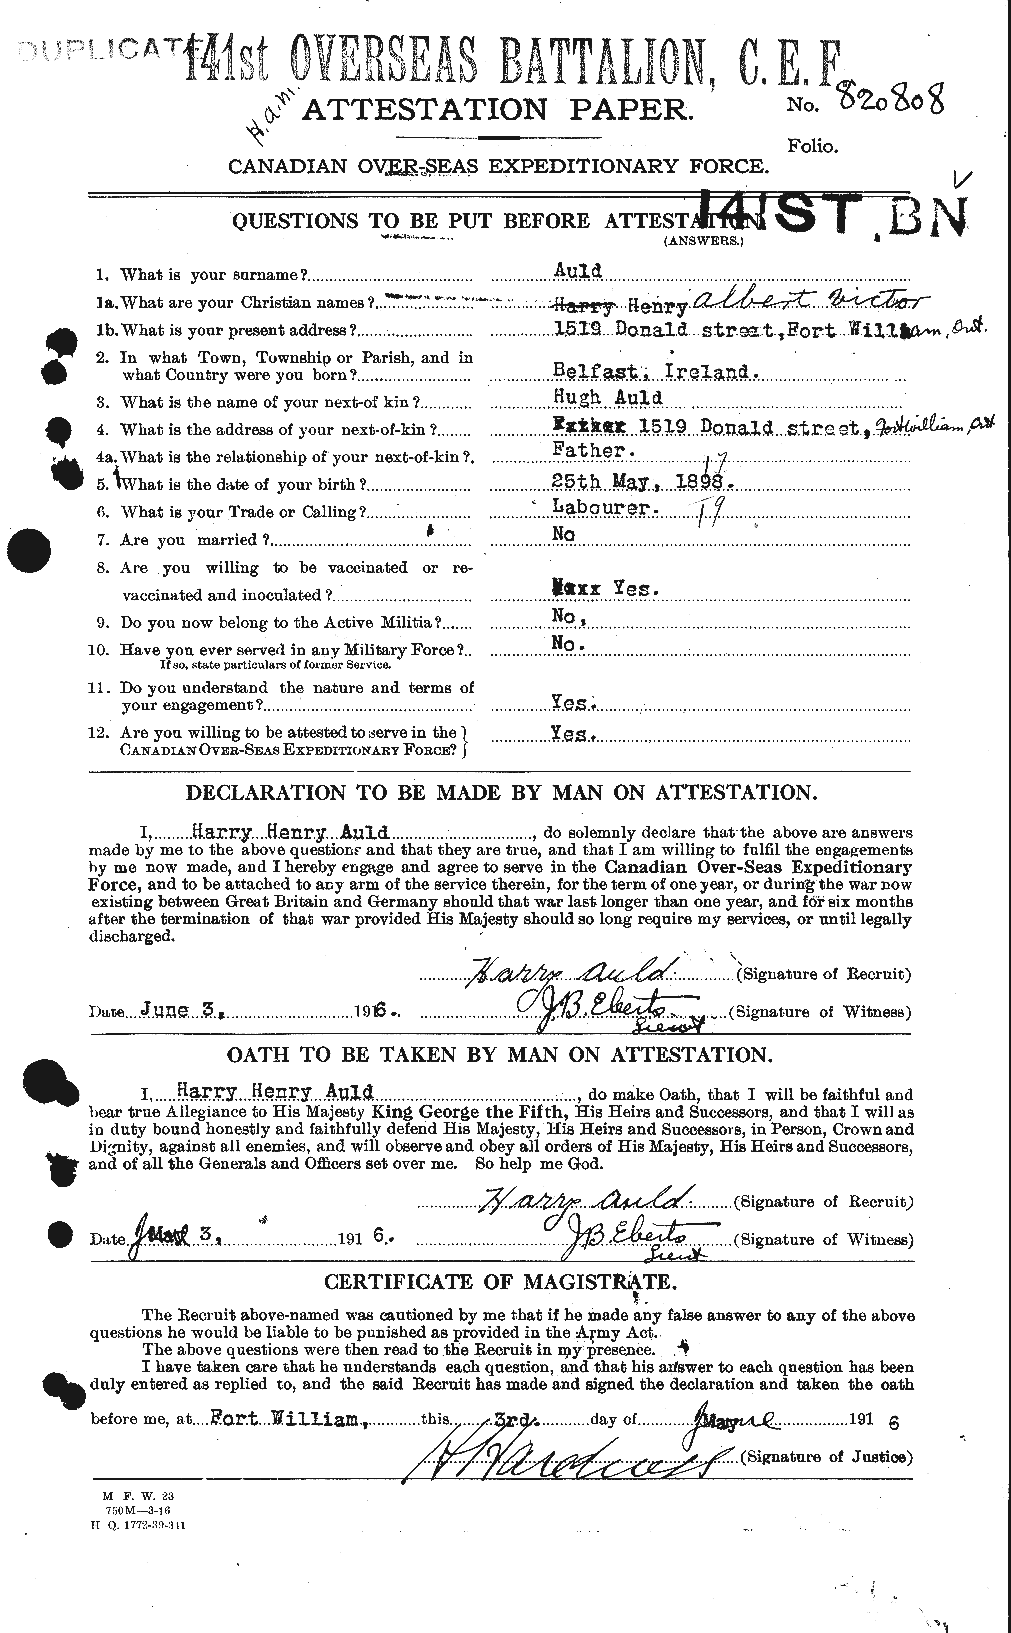 Dossiers du Personnel de la Première Guerre mondiale - CEC 224275a